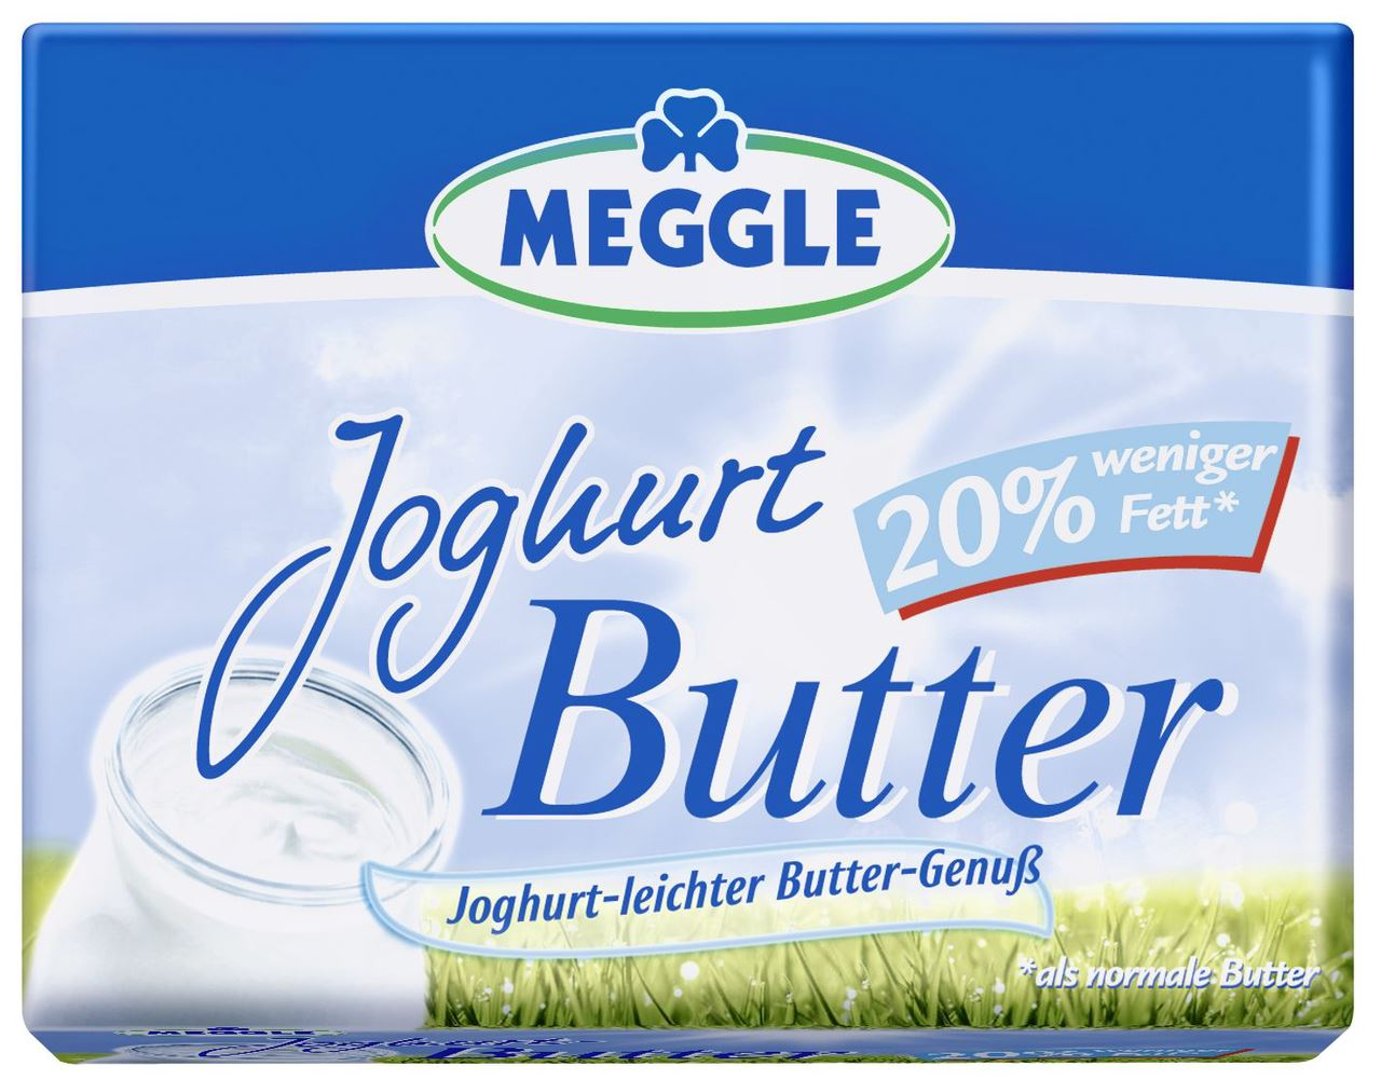 Meggle - Joghurtbutter 65 % Fett - 250 g Packung